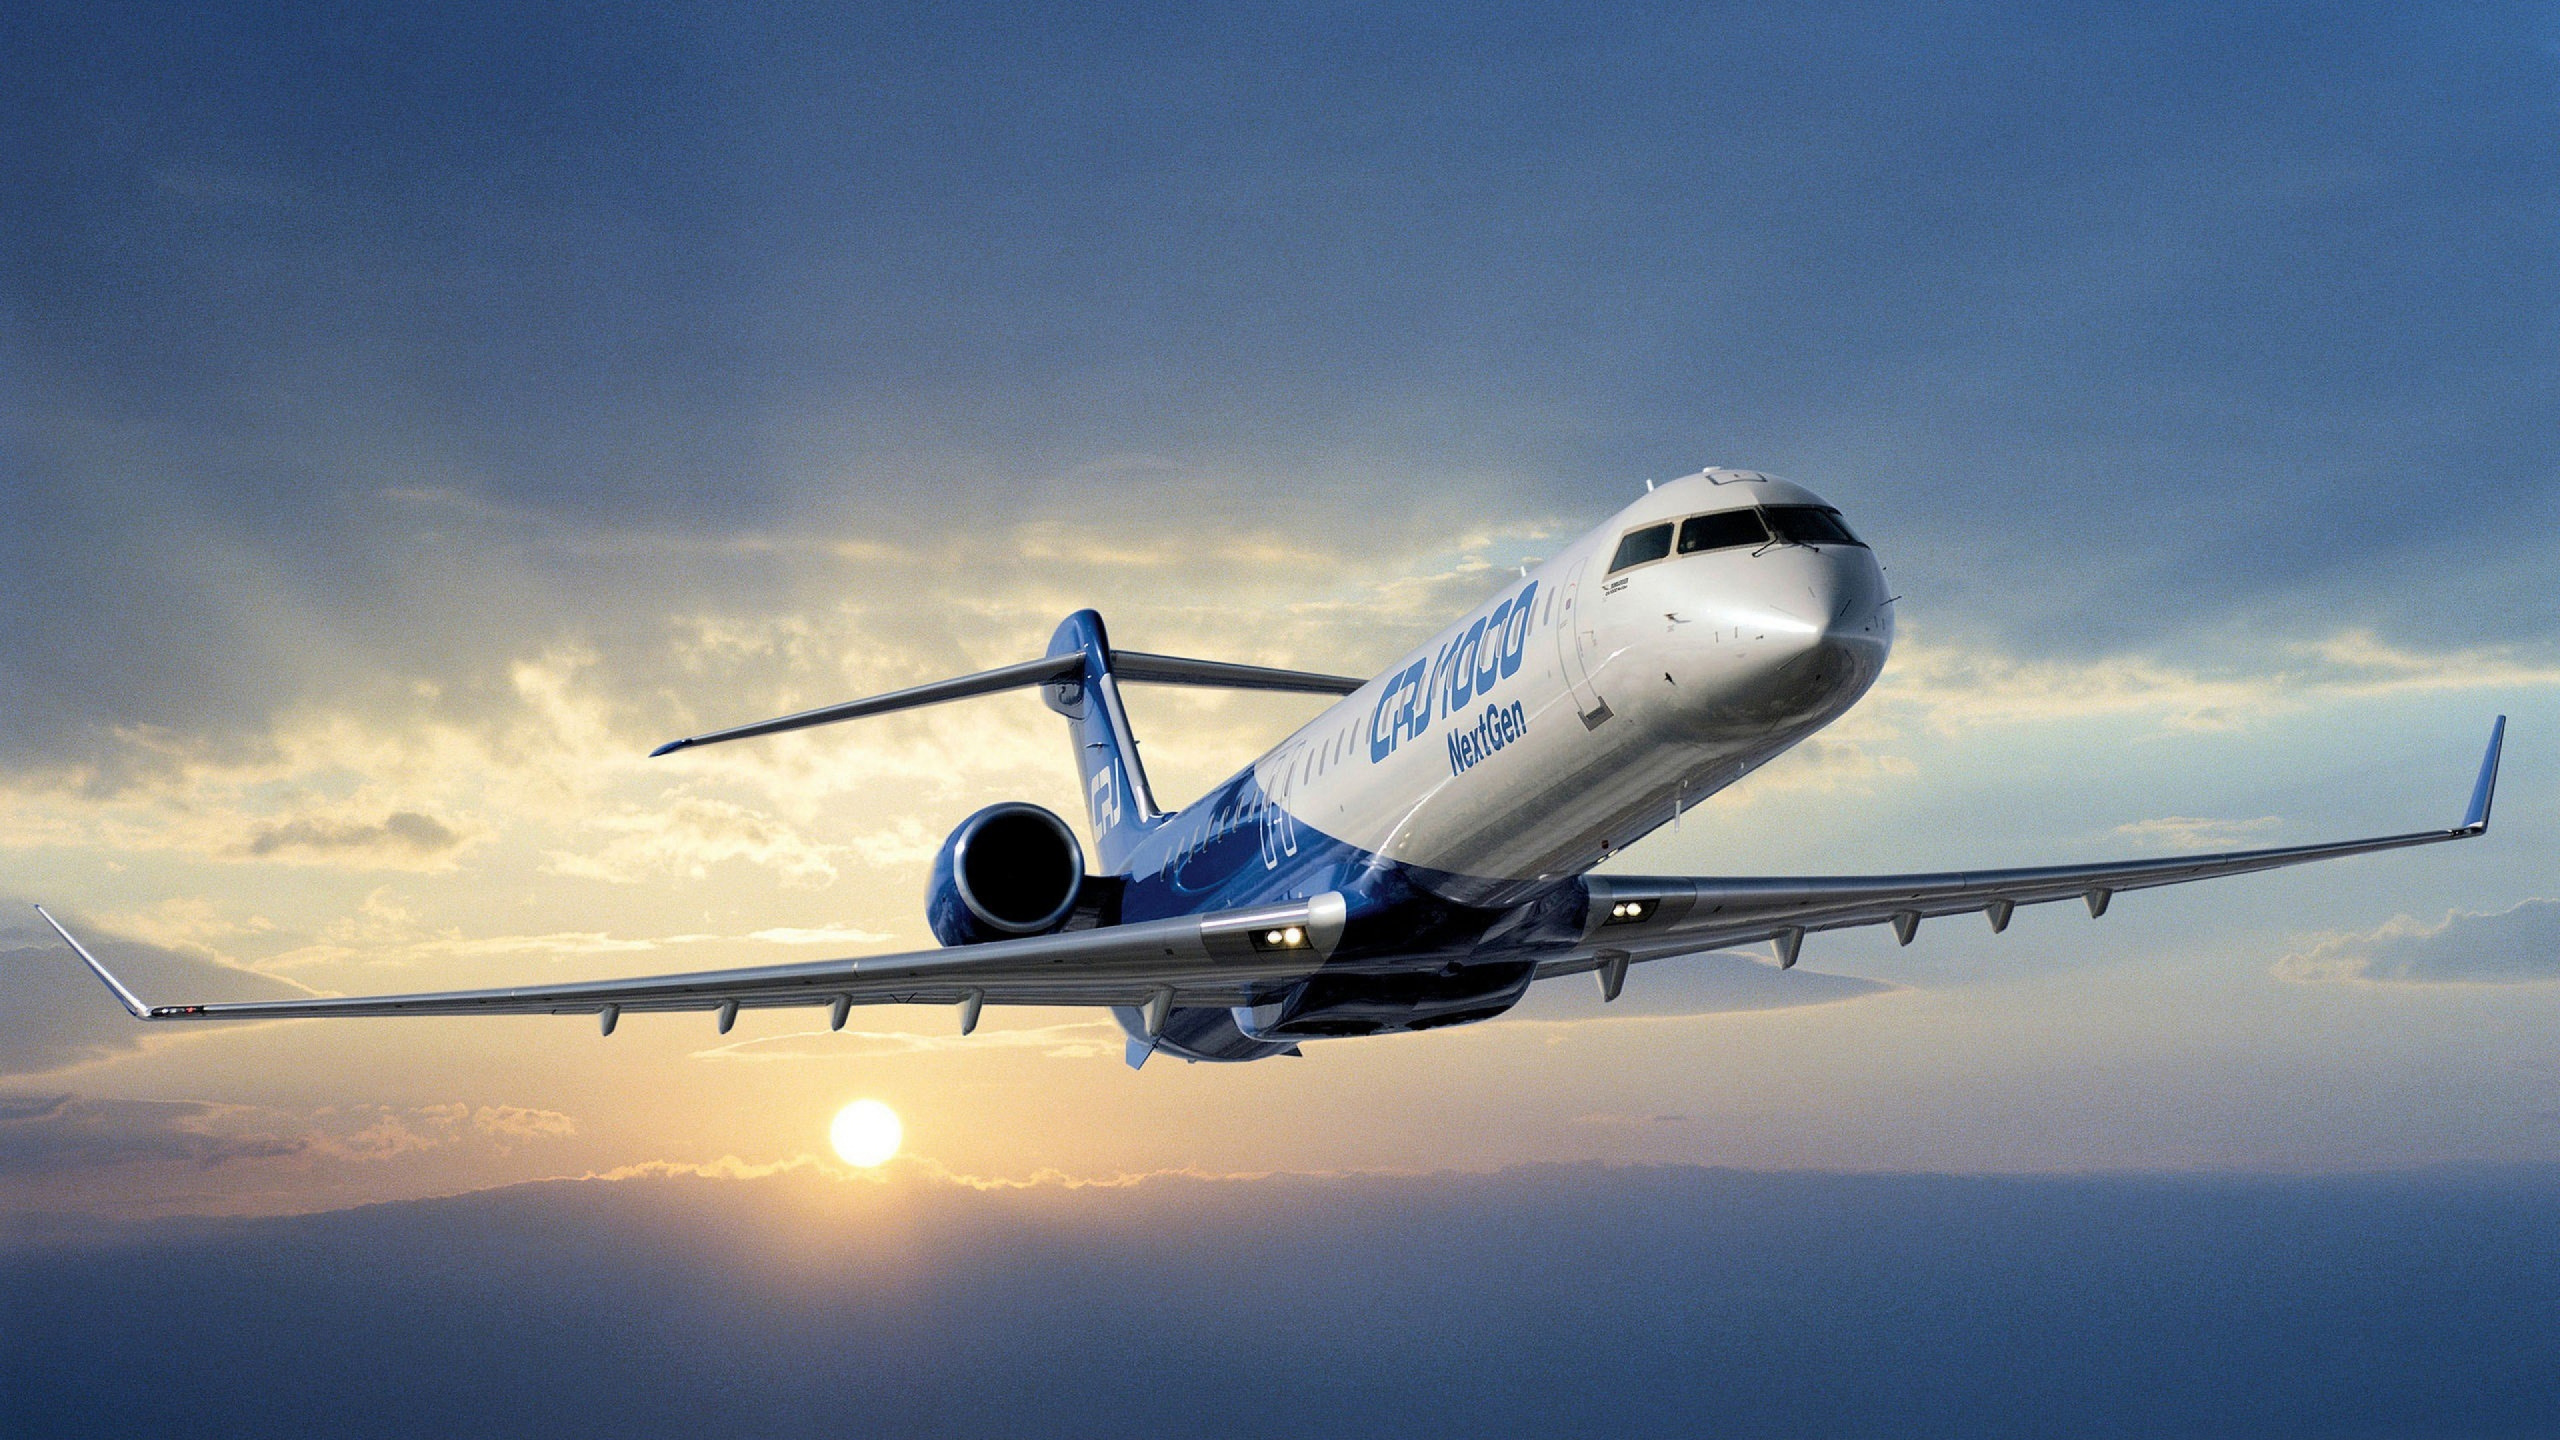 客机, 航空, 空中旅行, 航空公司, 航空航天工程 壁纸 2560x1440 允许